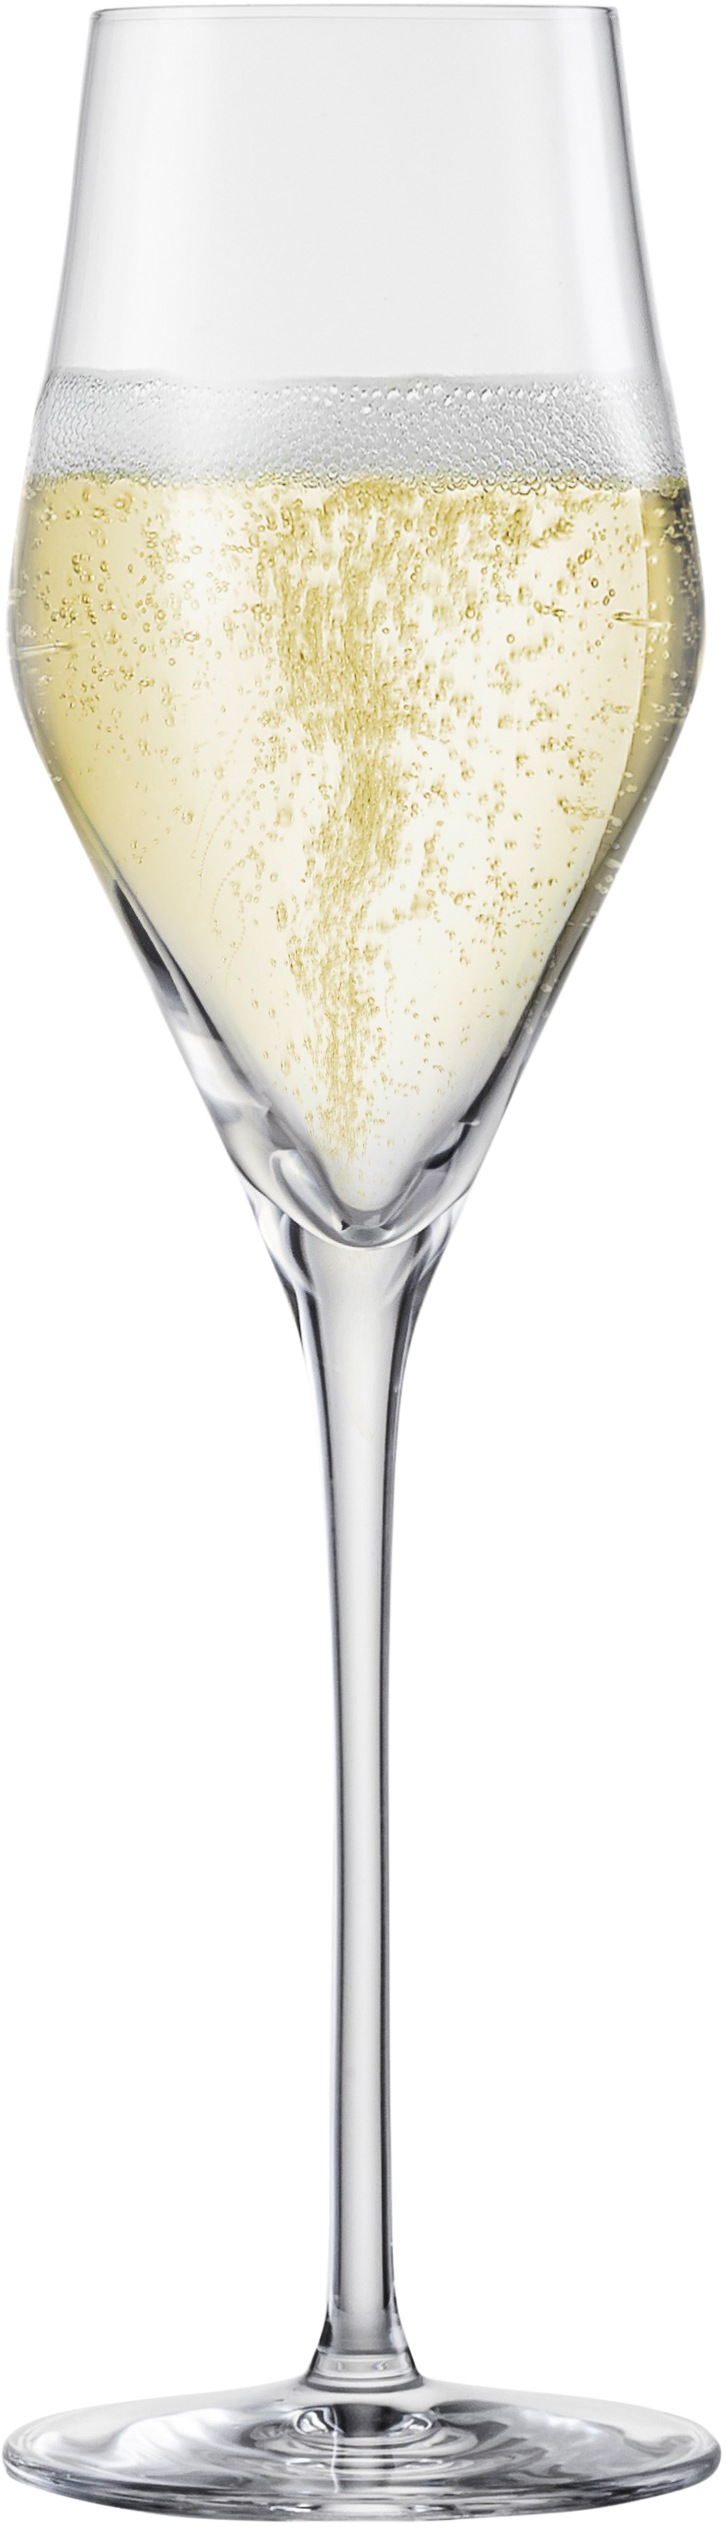 Champagnerglas »Sky SensisPlus«, (Set, 4 tlg.), bleifrei, 260 ml, 4-teilig